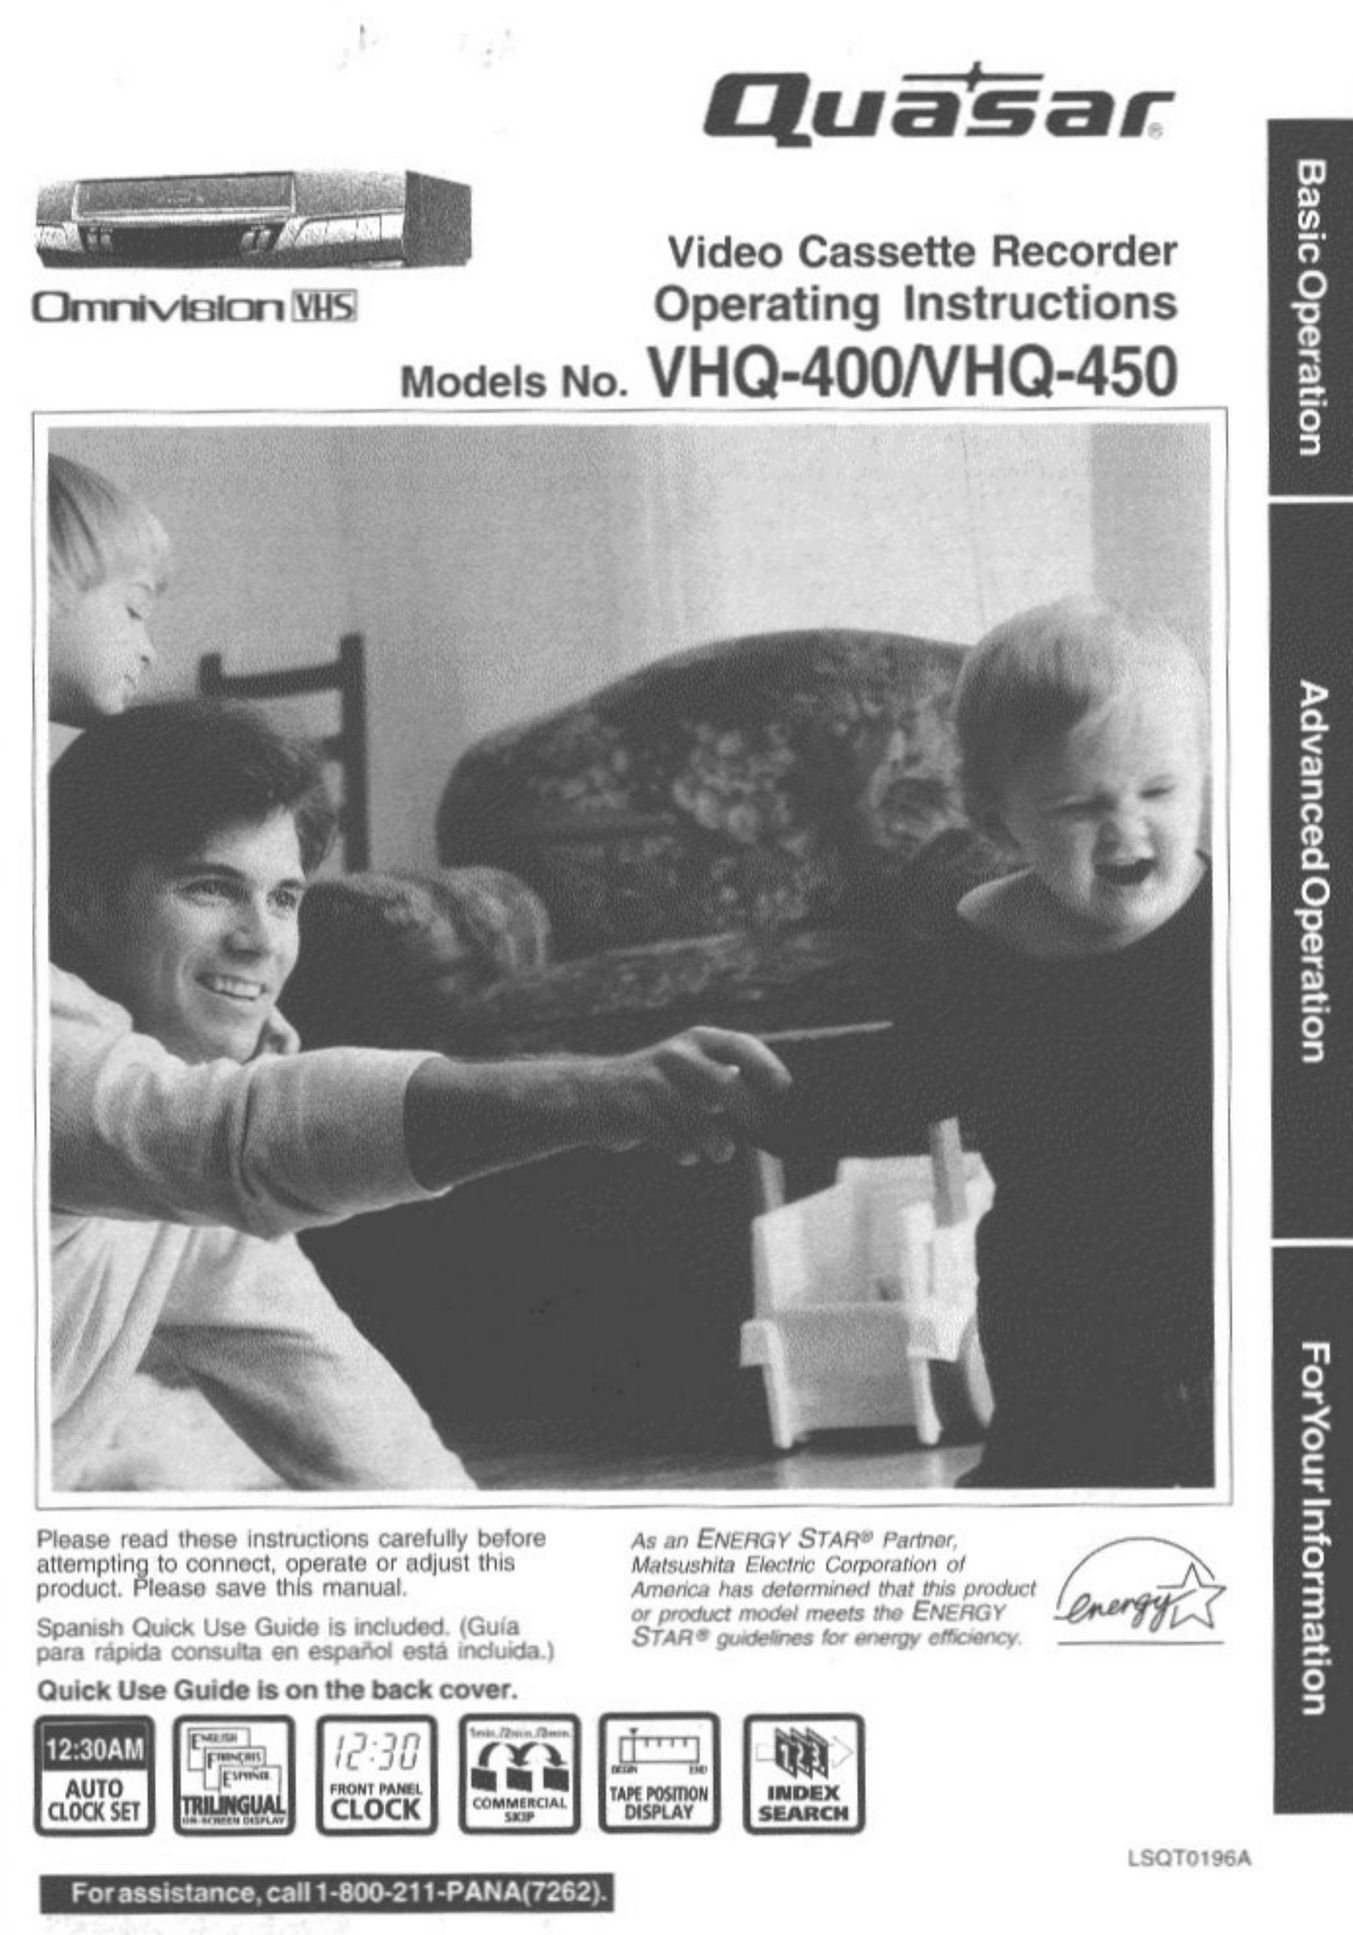 Quasar VHQ-400 VCR User Manual